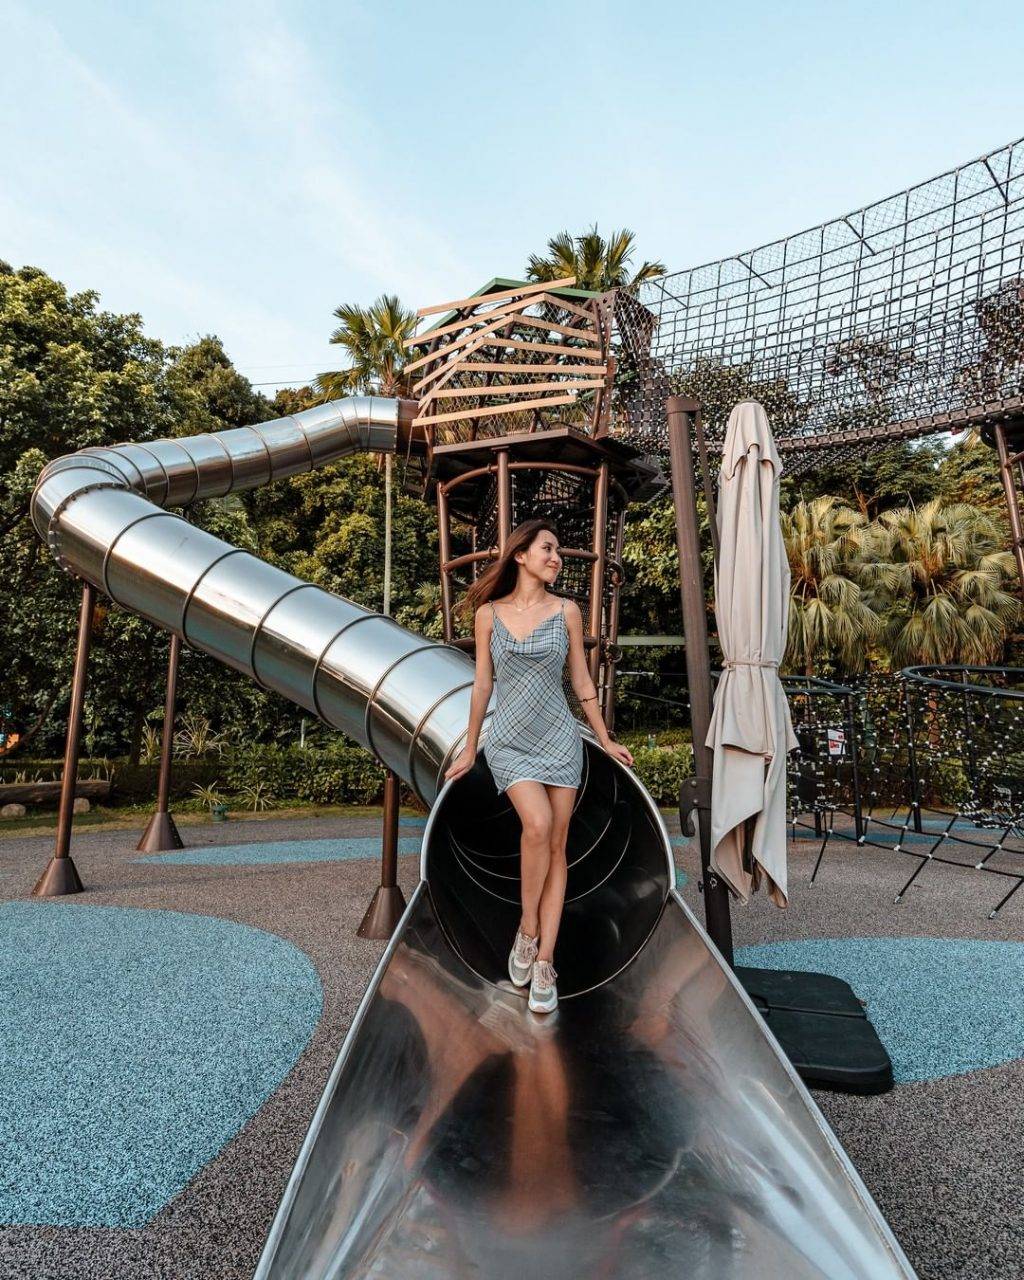 好玩又刺激😜 新加坡精选6大特色游乐场！最多滑梯、巨型高塔、古老龙头游乐场都在这里面👏🏻 